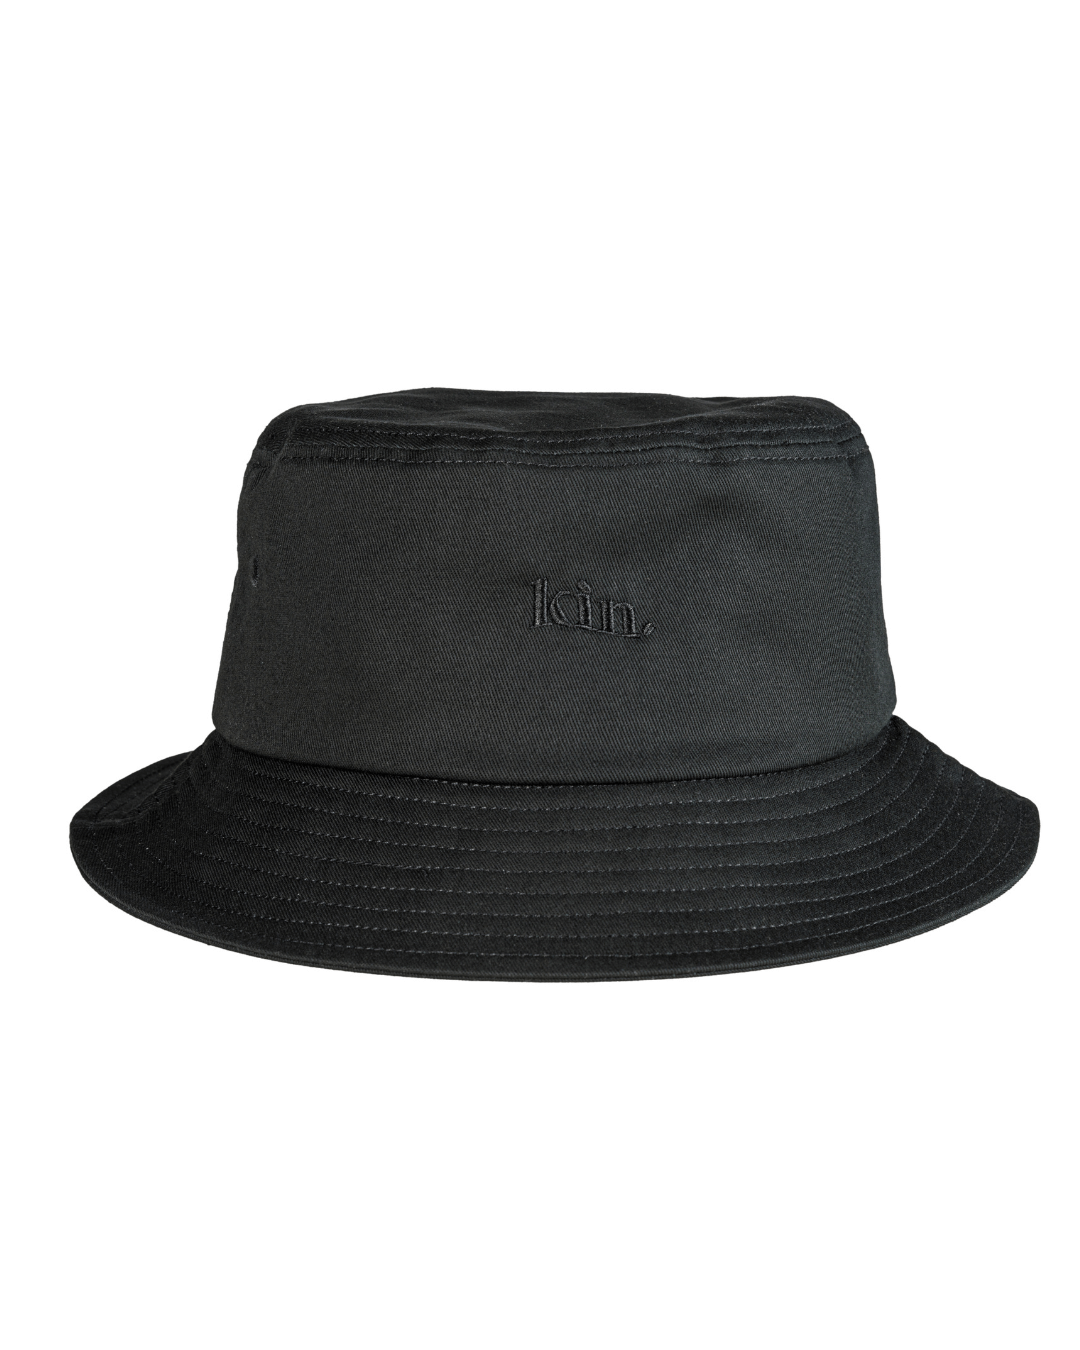 All Black Satin Lined Bucket Hat | KINApparel